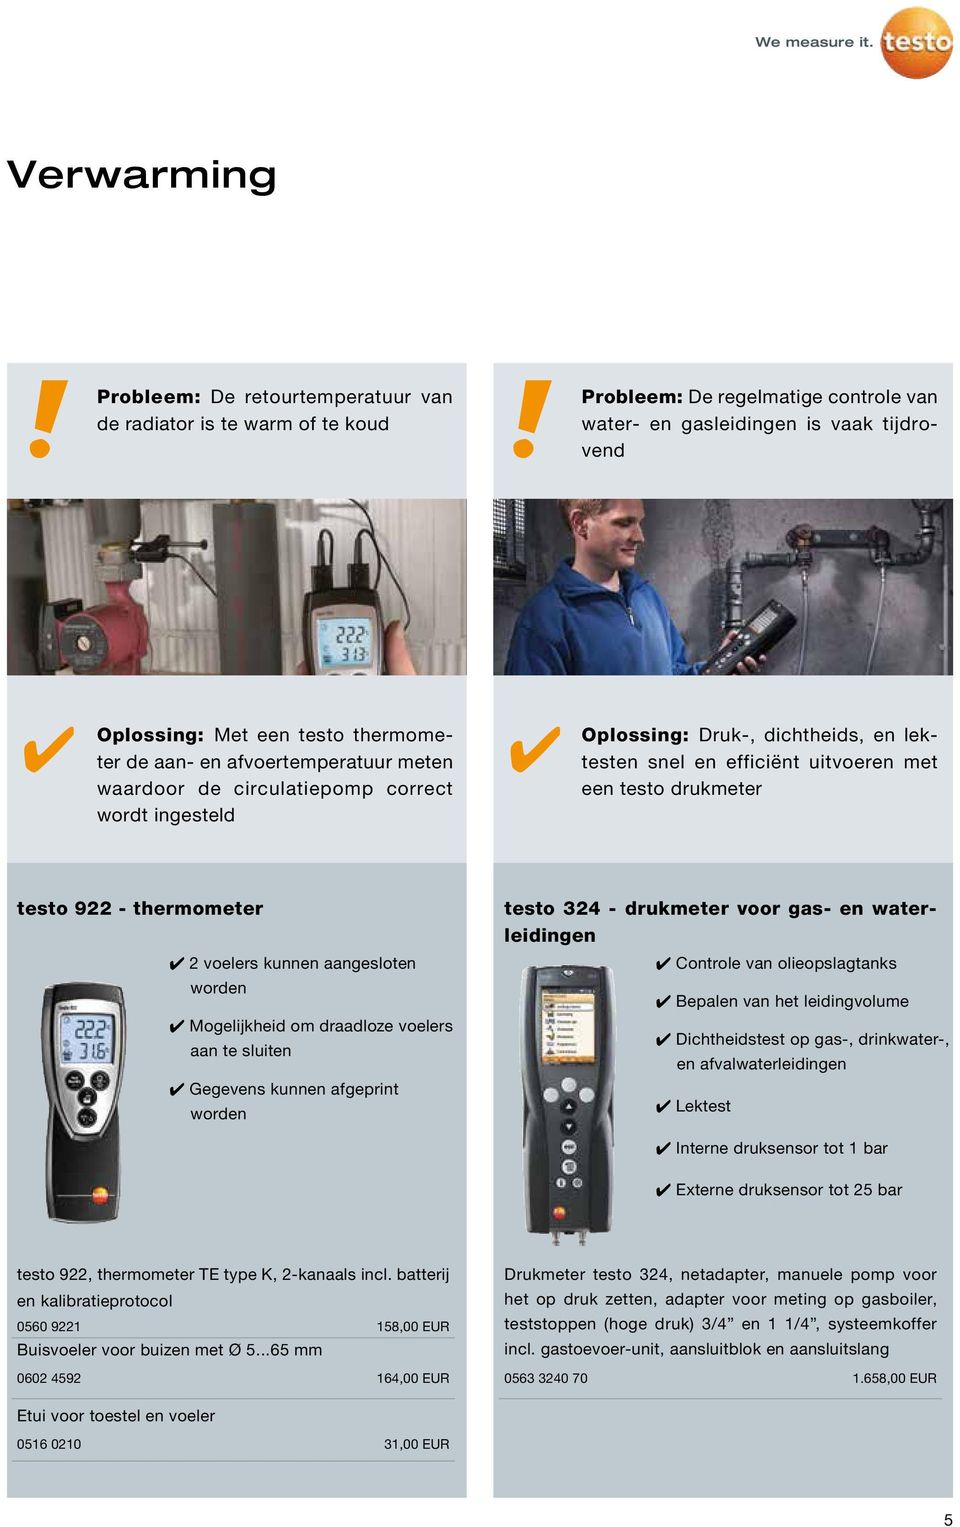 thermometer 2 voelers kunnen aangesloten worden Mogelijkheid om draadloze voelers aan te sluiten Gegevens kunnen afgeprint worden testo 32 - drukmeter voor gas- en waterleidingen Controle van